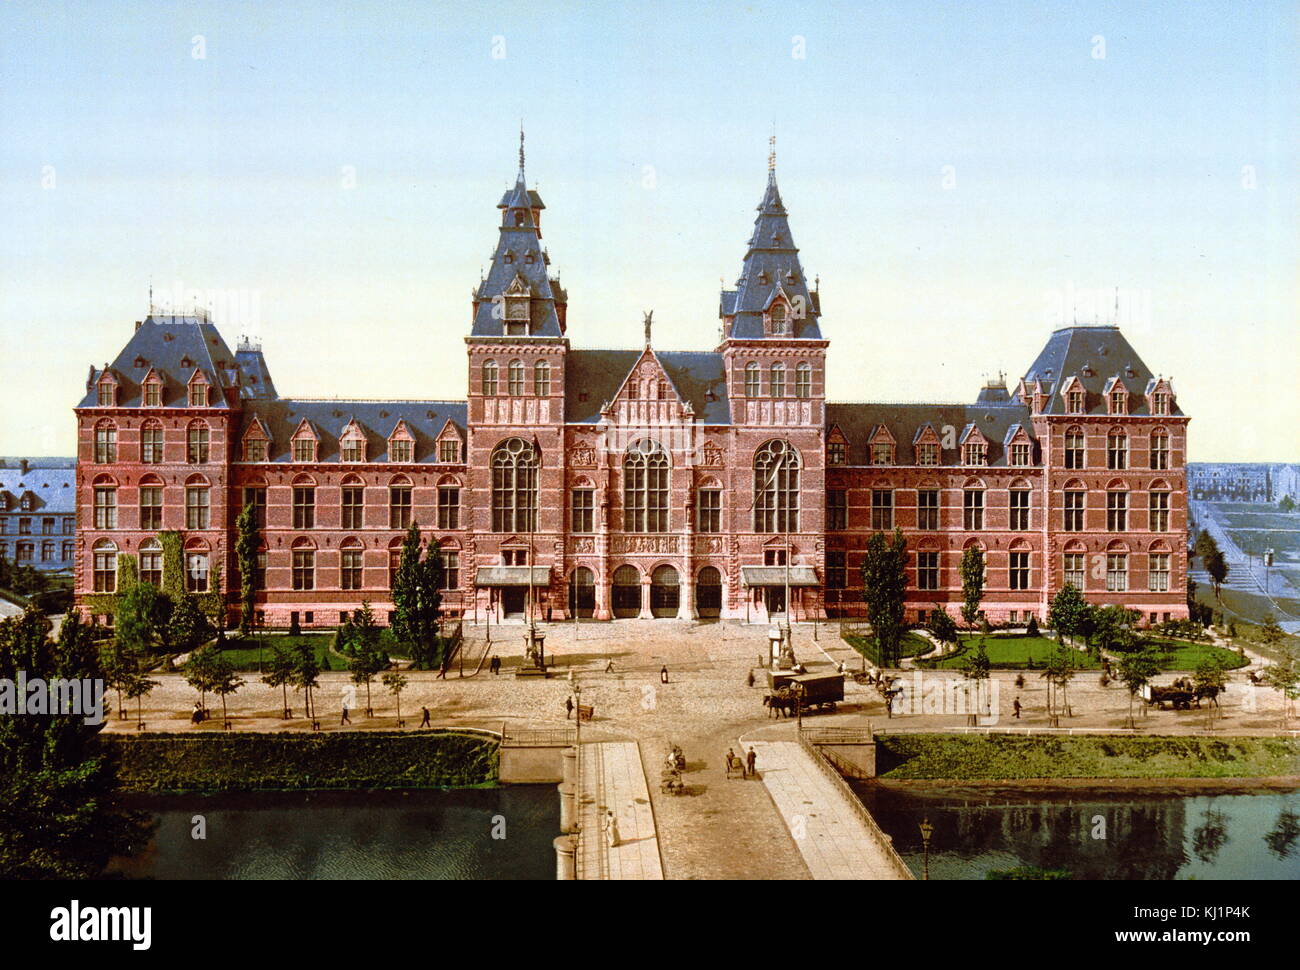 Stampa photomechanical datata al 1900, raffigurante il Rijksmuseum Amsterdam; Holland. Il Rijksmuseum è un cittadino olandese museo dedicato alle arti e alla storia di Amsterdam. Il museo si trova presso la piazza dei musei di Amsterdam. Il Rijksmuseum è stata fondata a L'Aia nel 1800 e si trasferì ad Amsterdam nel 1808. L'attuale edificio principale è stato progettato da Pierre Cuypers e primo ha aperto le sue porte nel 1885. Foto Stock